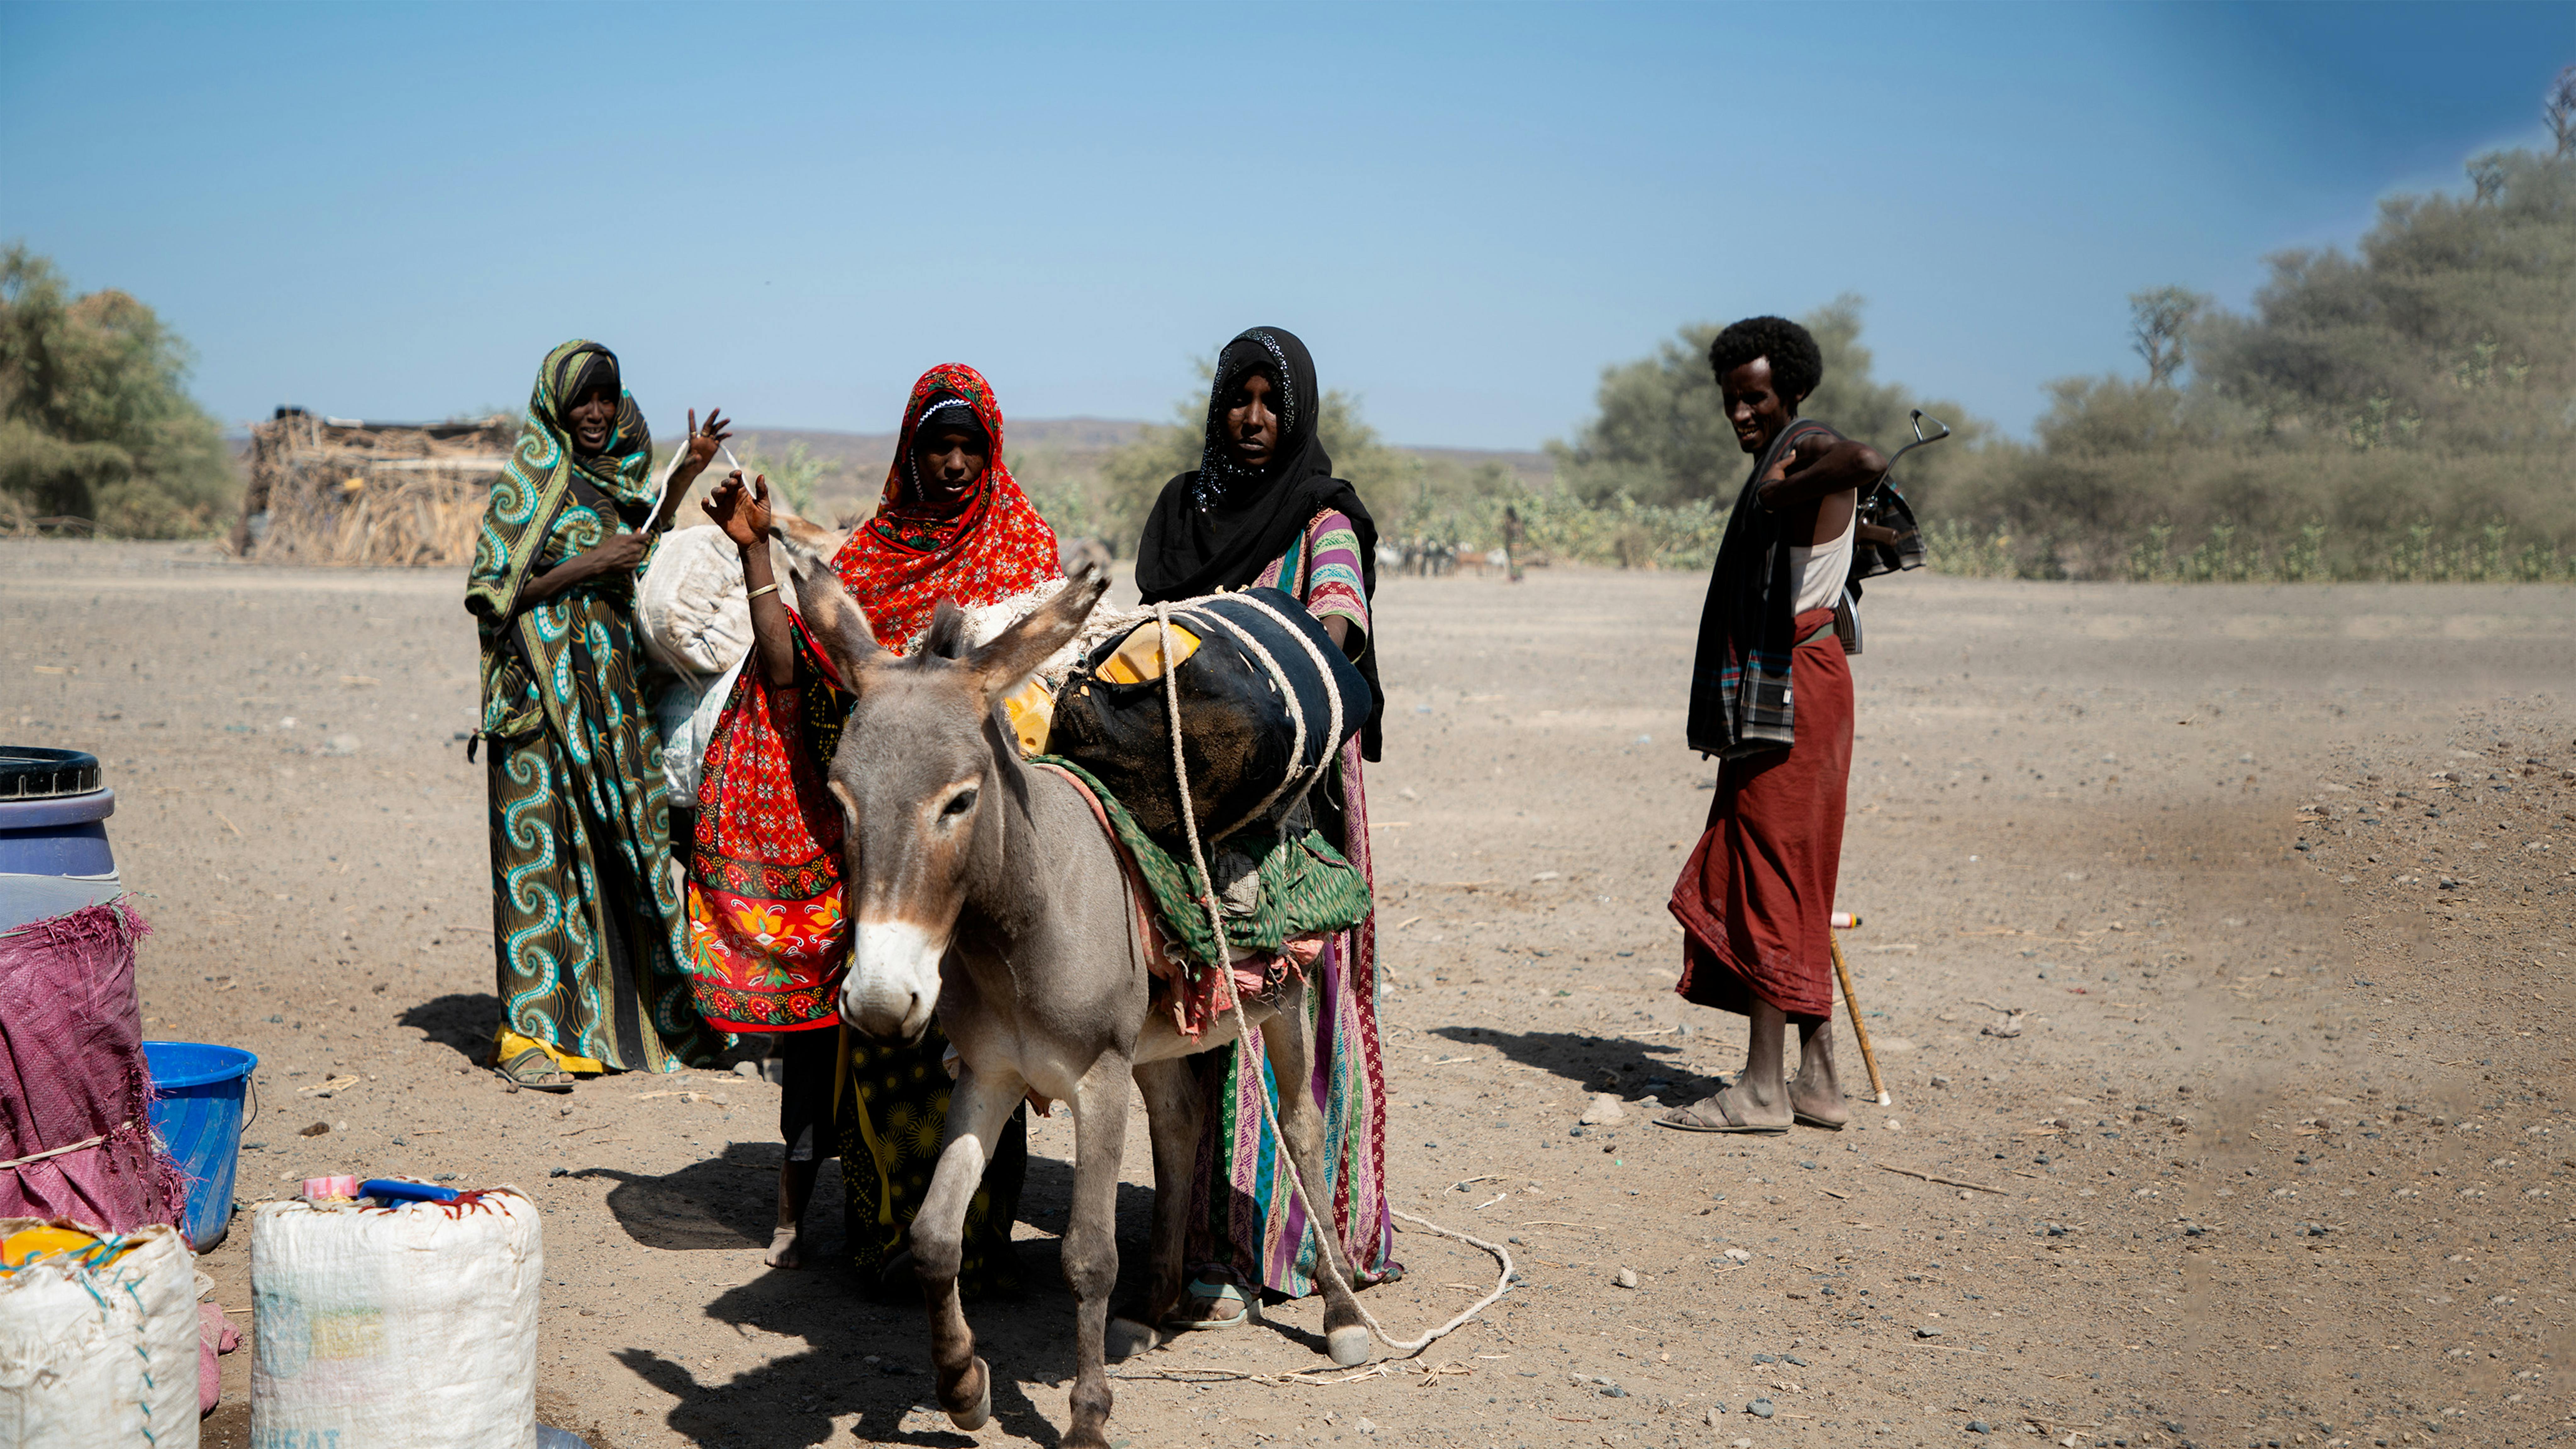 Fatuma cammina ogni giorno 5-6 ore per arrivare al punto pprovvigionamento d’acqua  più vicino, situato nel villaggio di Kori Fenti. Insieme a lei percorrono la stessa strada molte donne della zona. Siamo nel nord dell'Etiopia